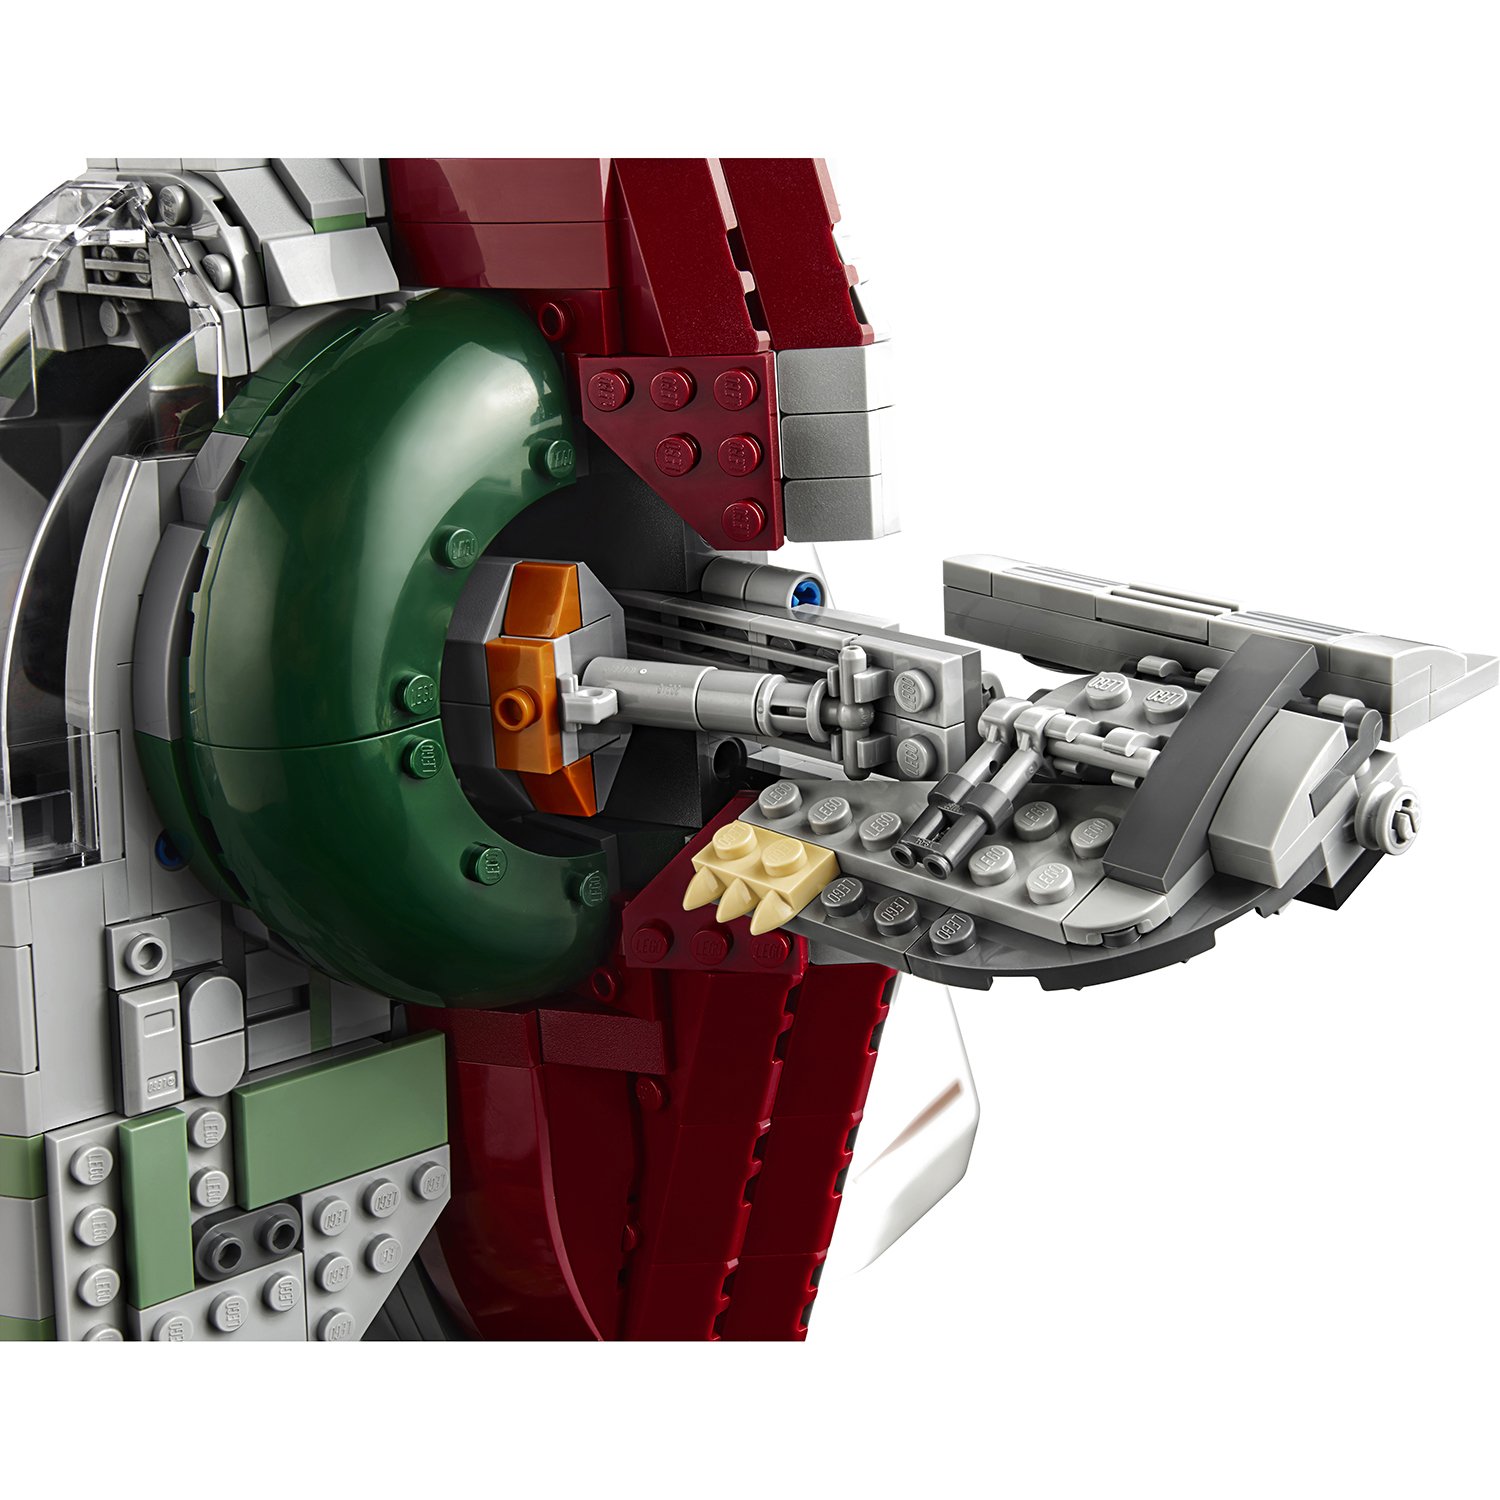 Lego Star Wars 75243 Раб I выпуск к 20-летнему юбилею 75243